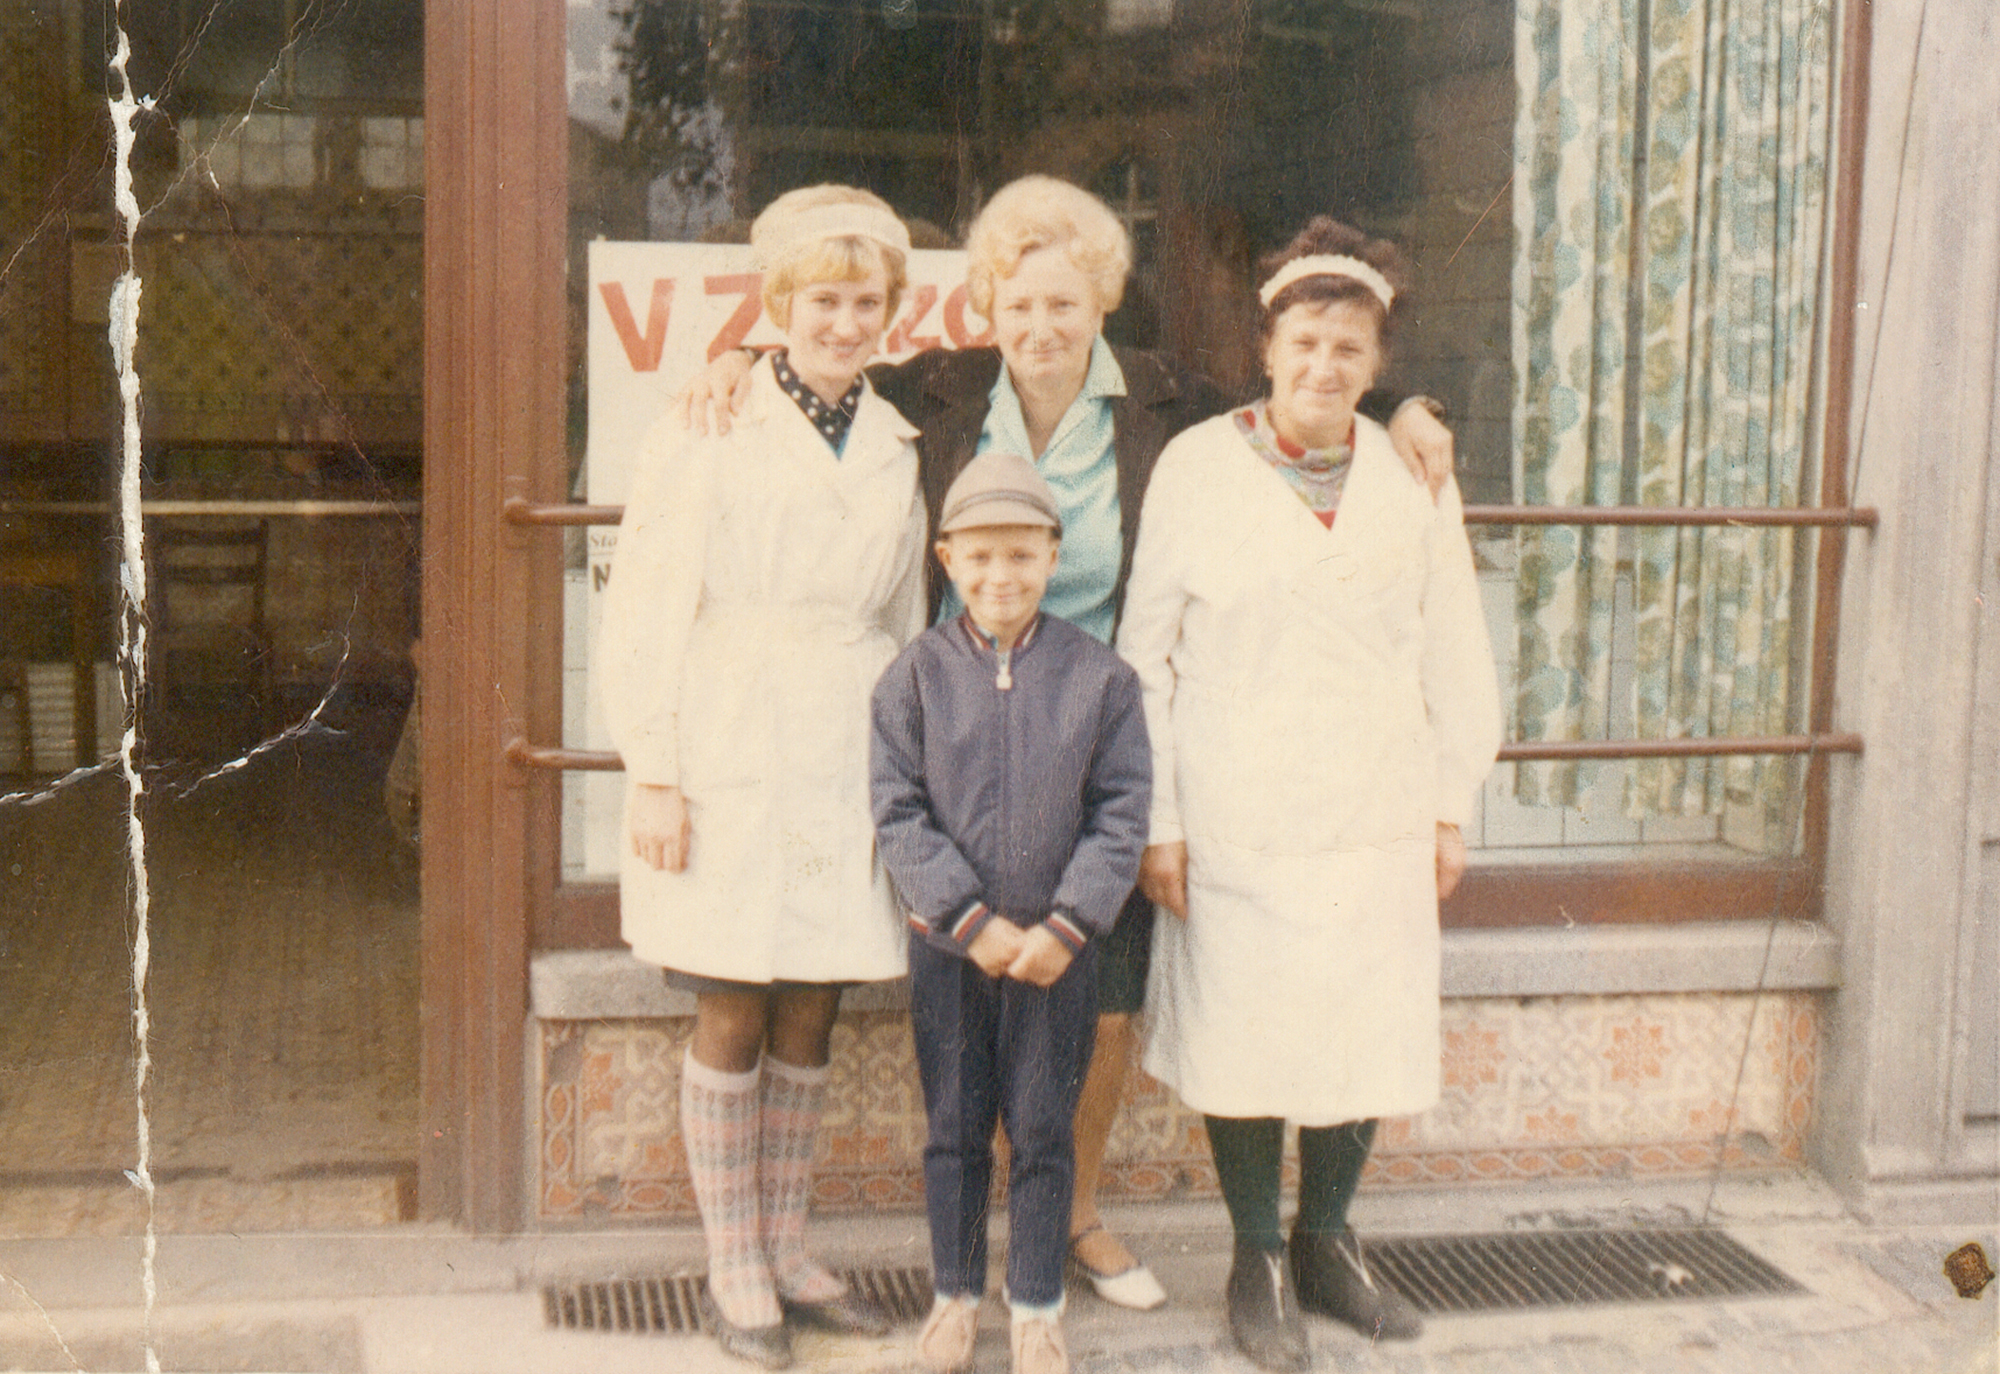 Barbara Riedel (Joszko) z lewej, ze swoją kierowniczką Magdaleną Wider przed nieistniejącym już sklepem mięsnym przy ul. Odrzańskiej 34